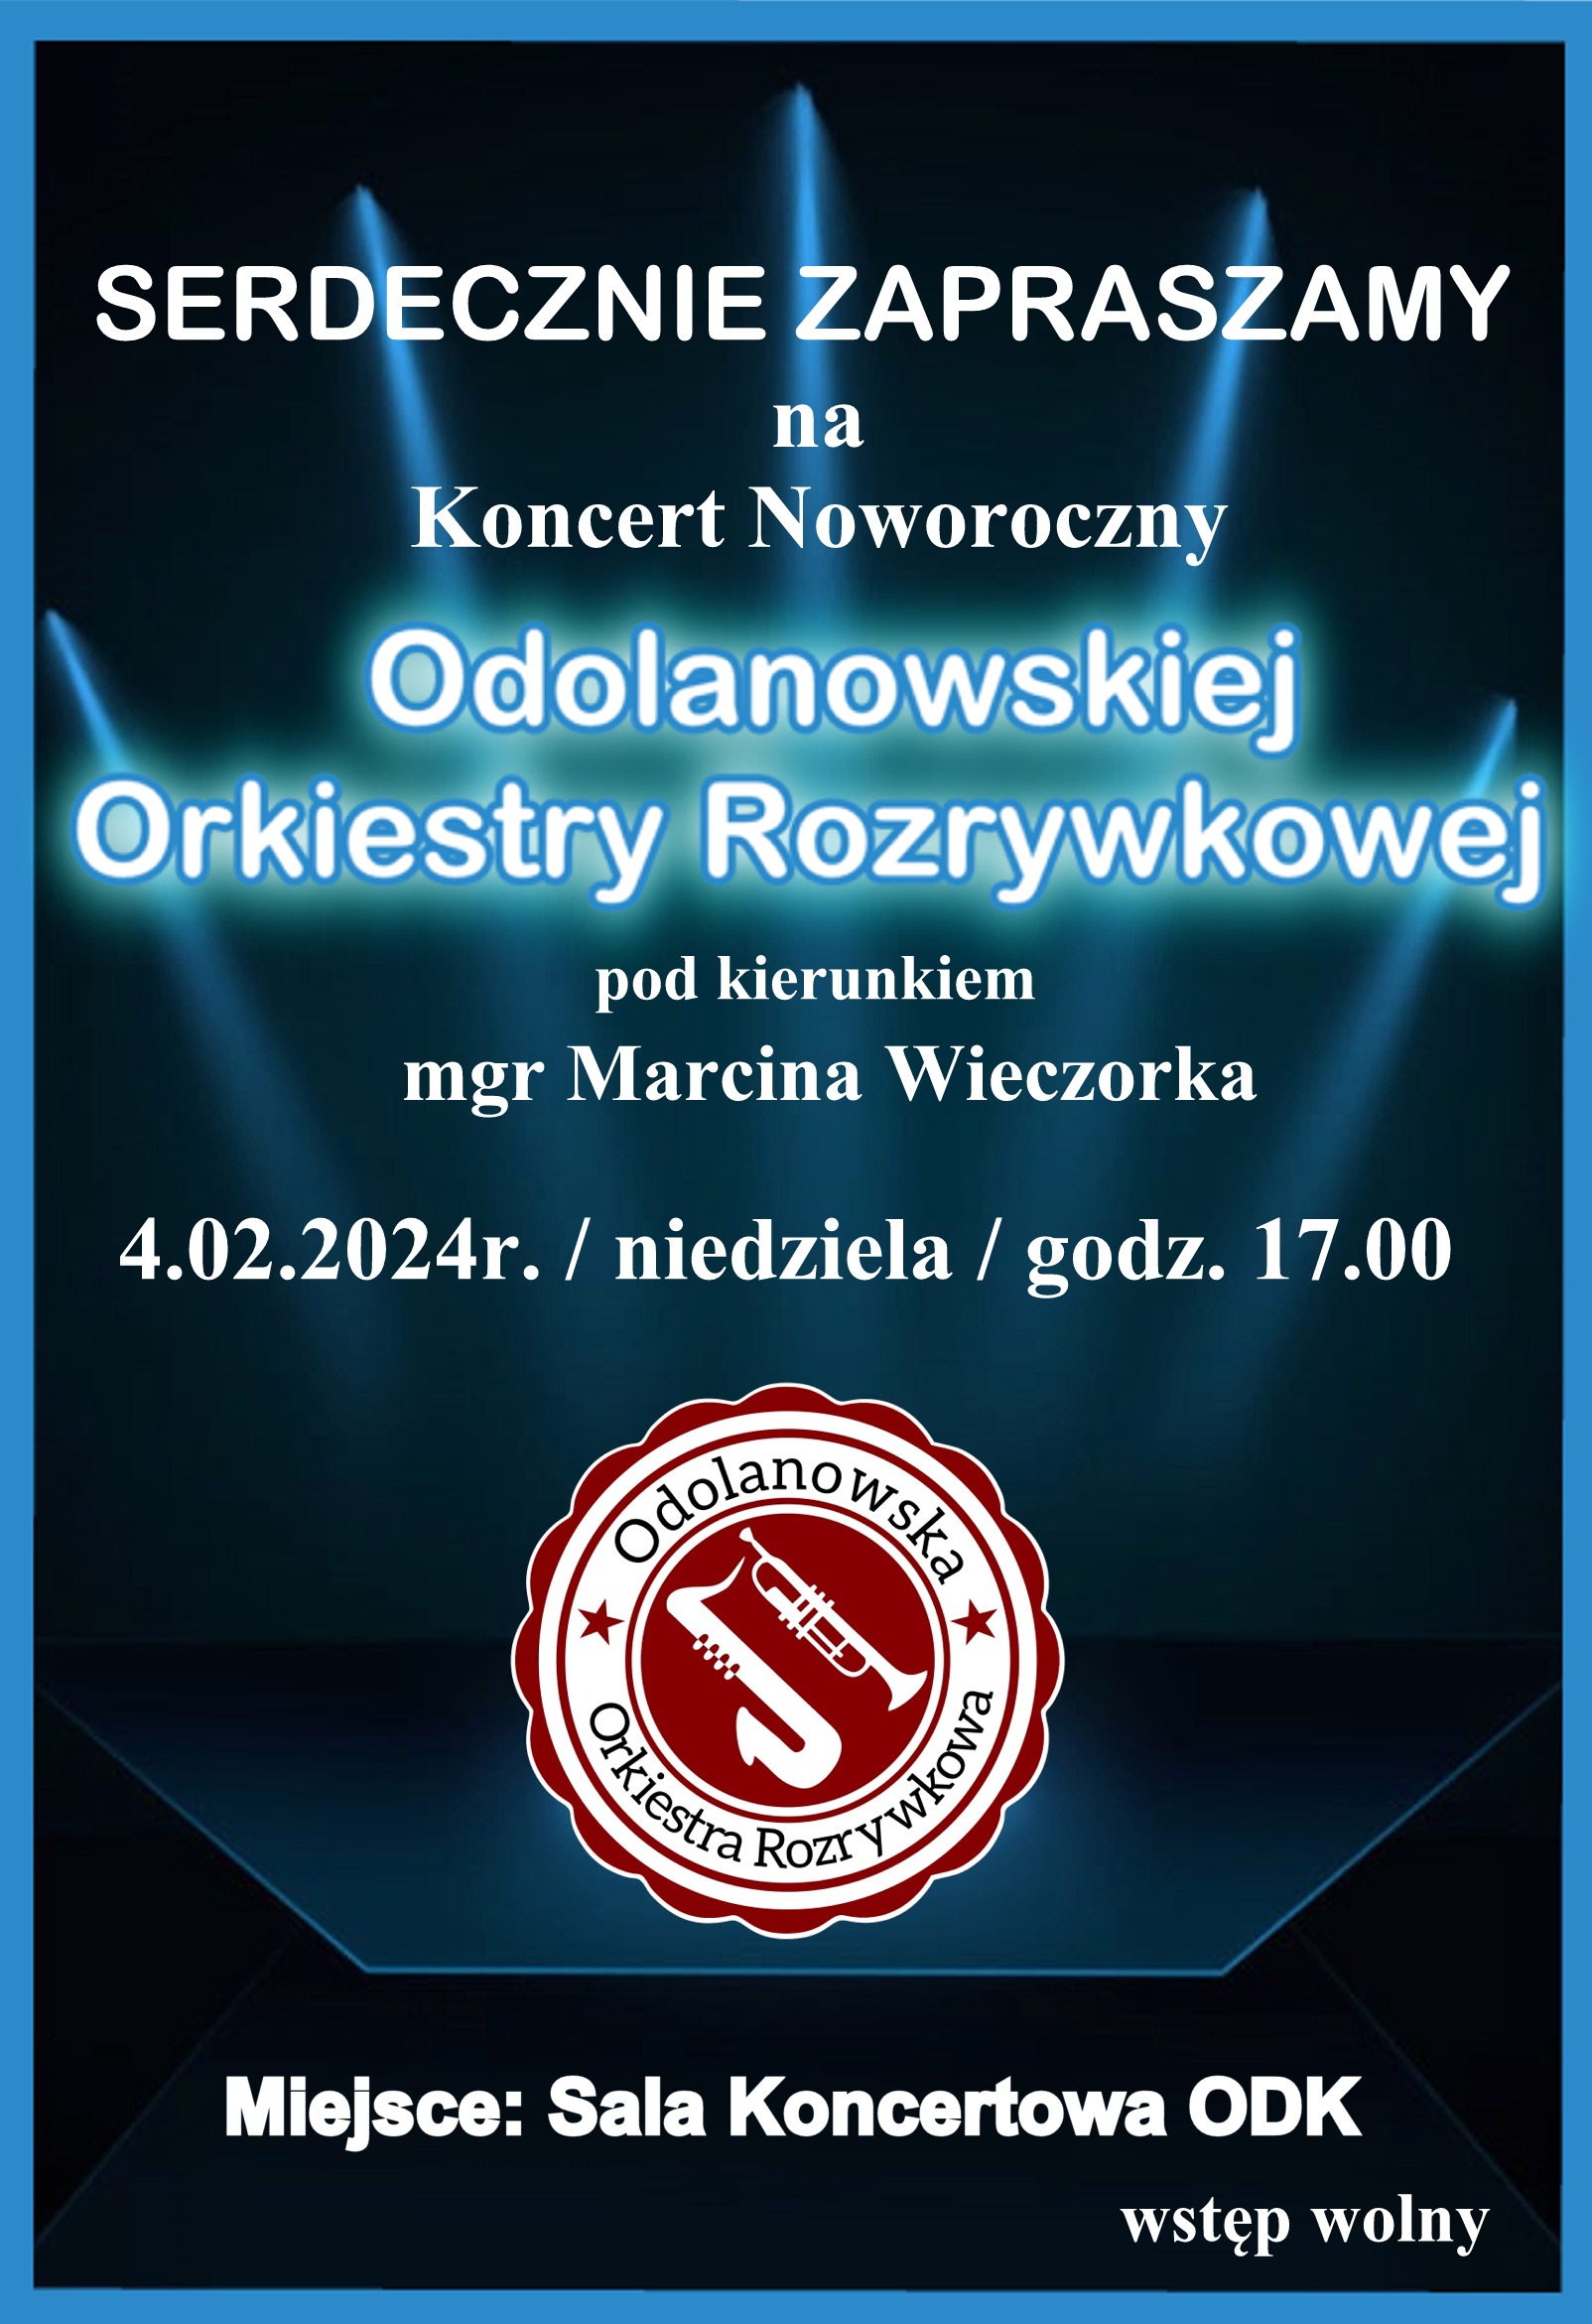 Zapraszamy na koncert Odolanowskiej Orkiestry Rozrywkowej